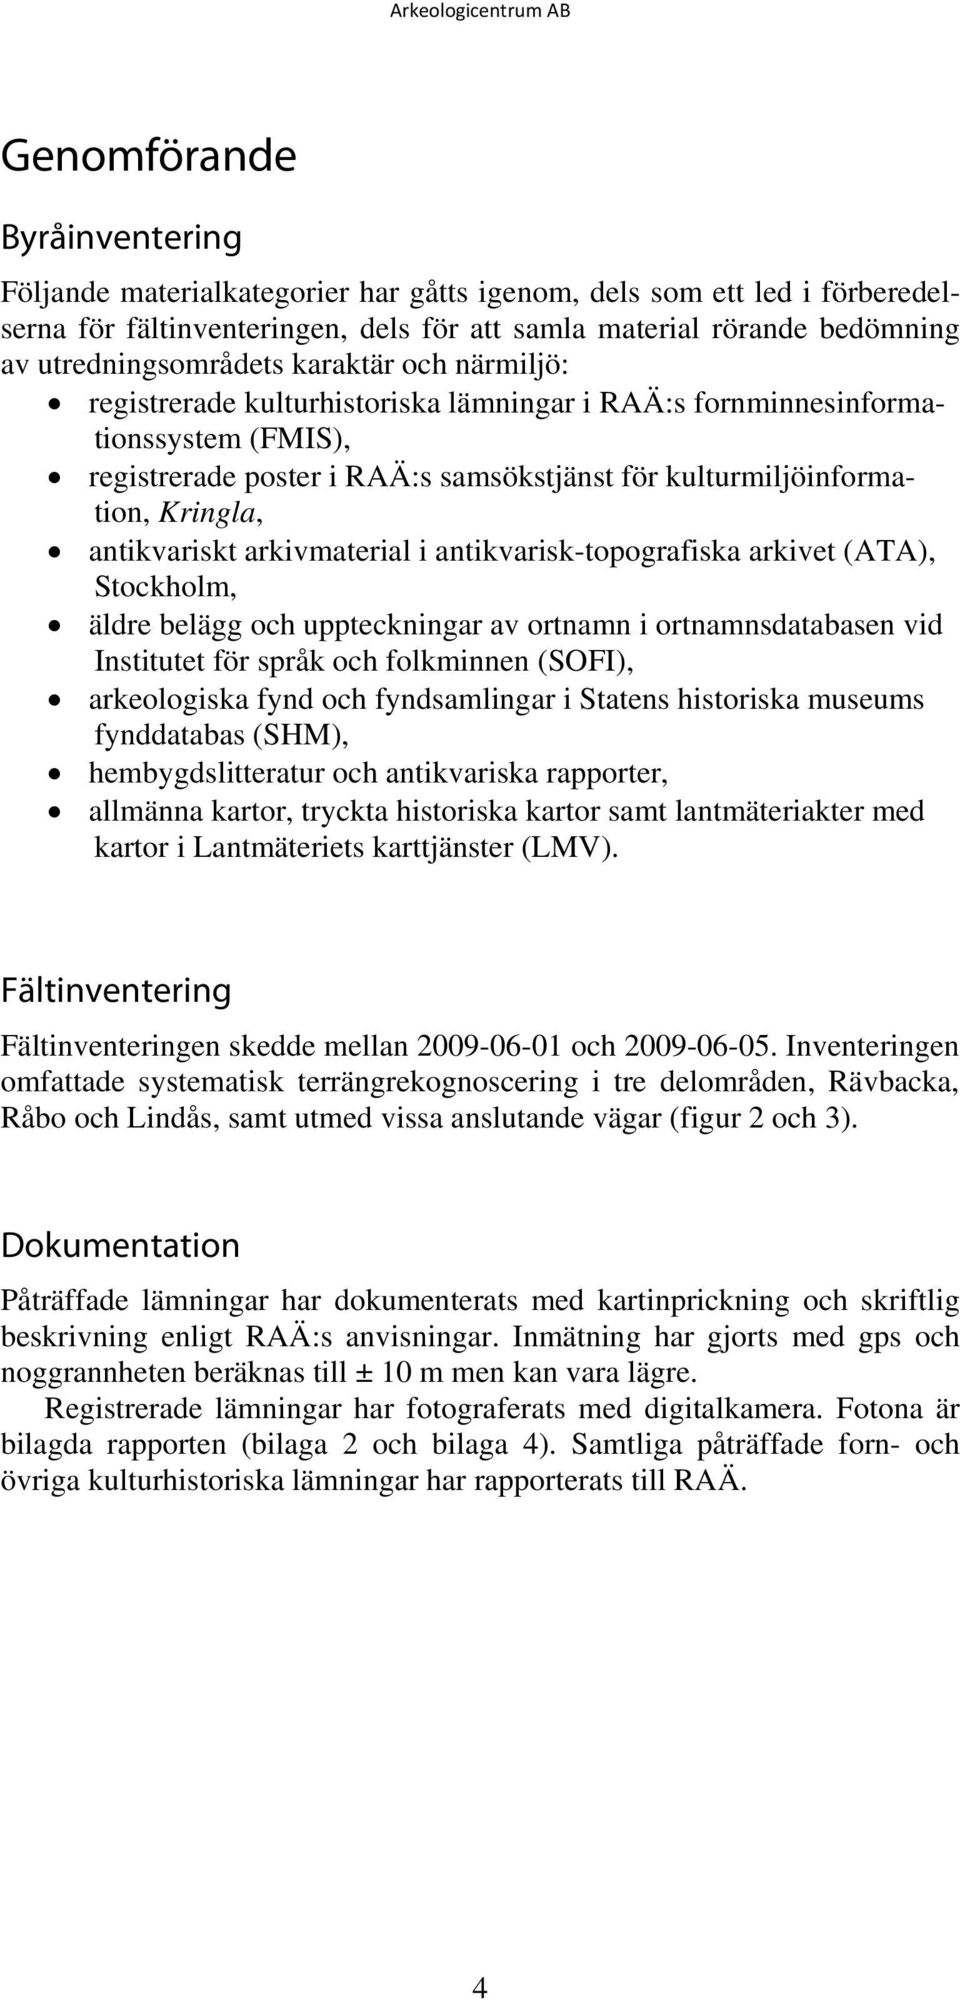 Kringla, antikvariskt arkivmaterial i antikvarisk-topografiska arkivet (ATA), Stockholm, äldre belägg och uppteckningar av ortnamn i ortnamnsdatabasen vid Institutet för språk och folkminnen (SOFI),